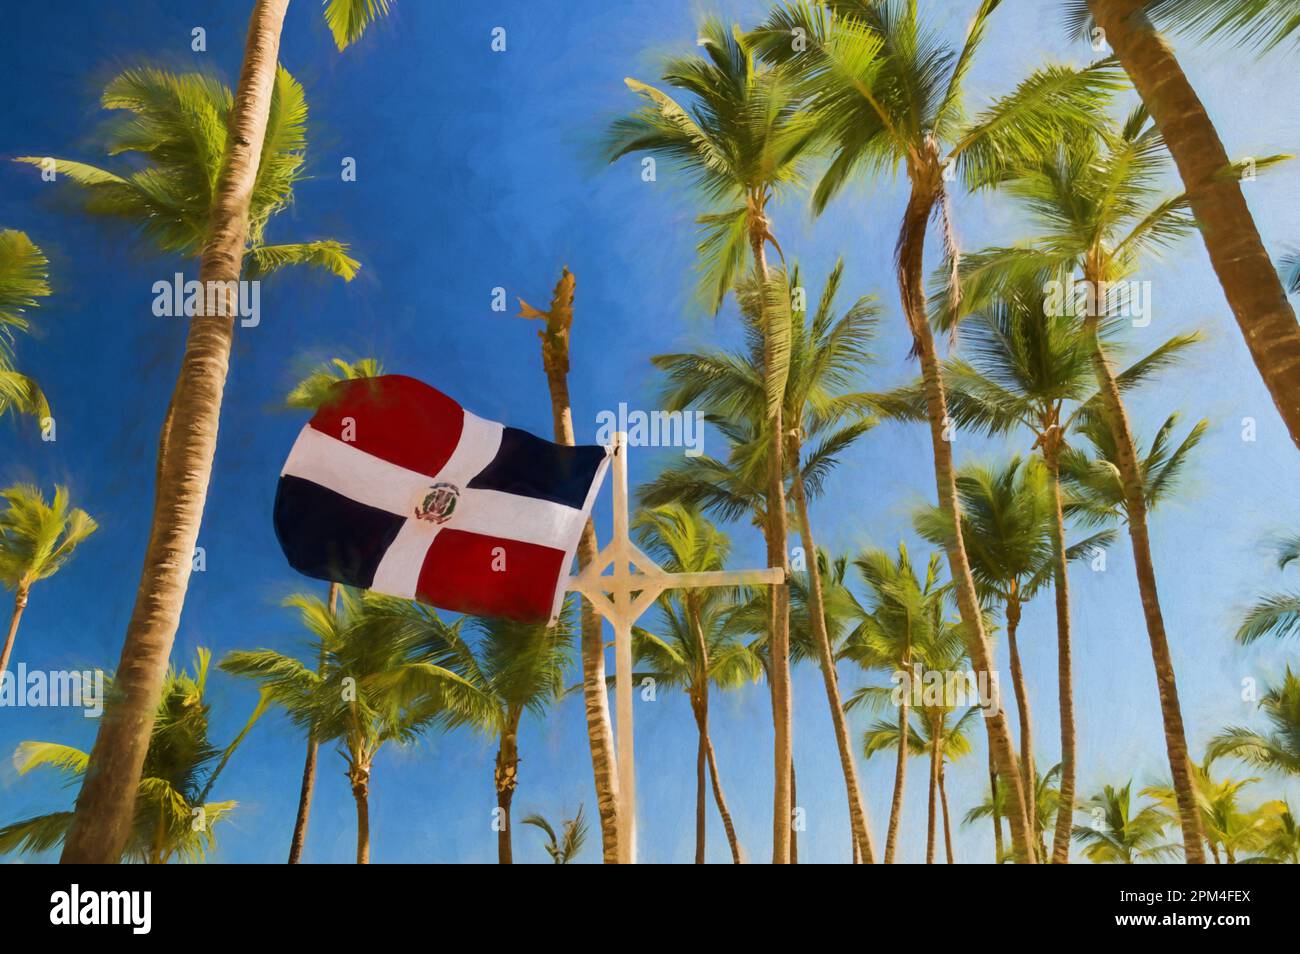 Peinture numérique du drapeau de la république dominicaine flottant dans le vent, parmi les palmiers et contre un ciel bleu dans les Caraïbes. Banque D'Images